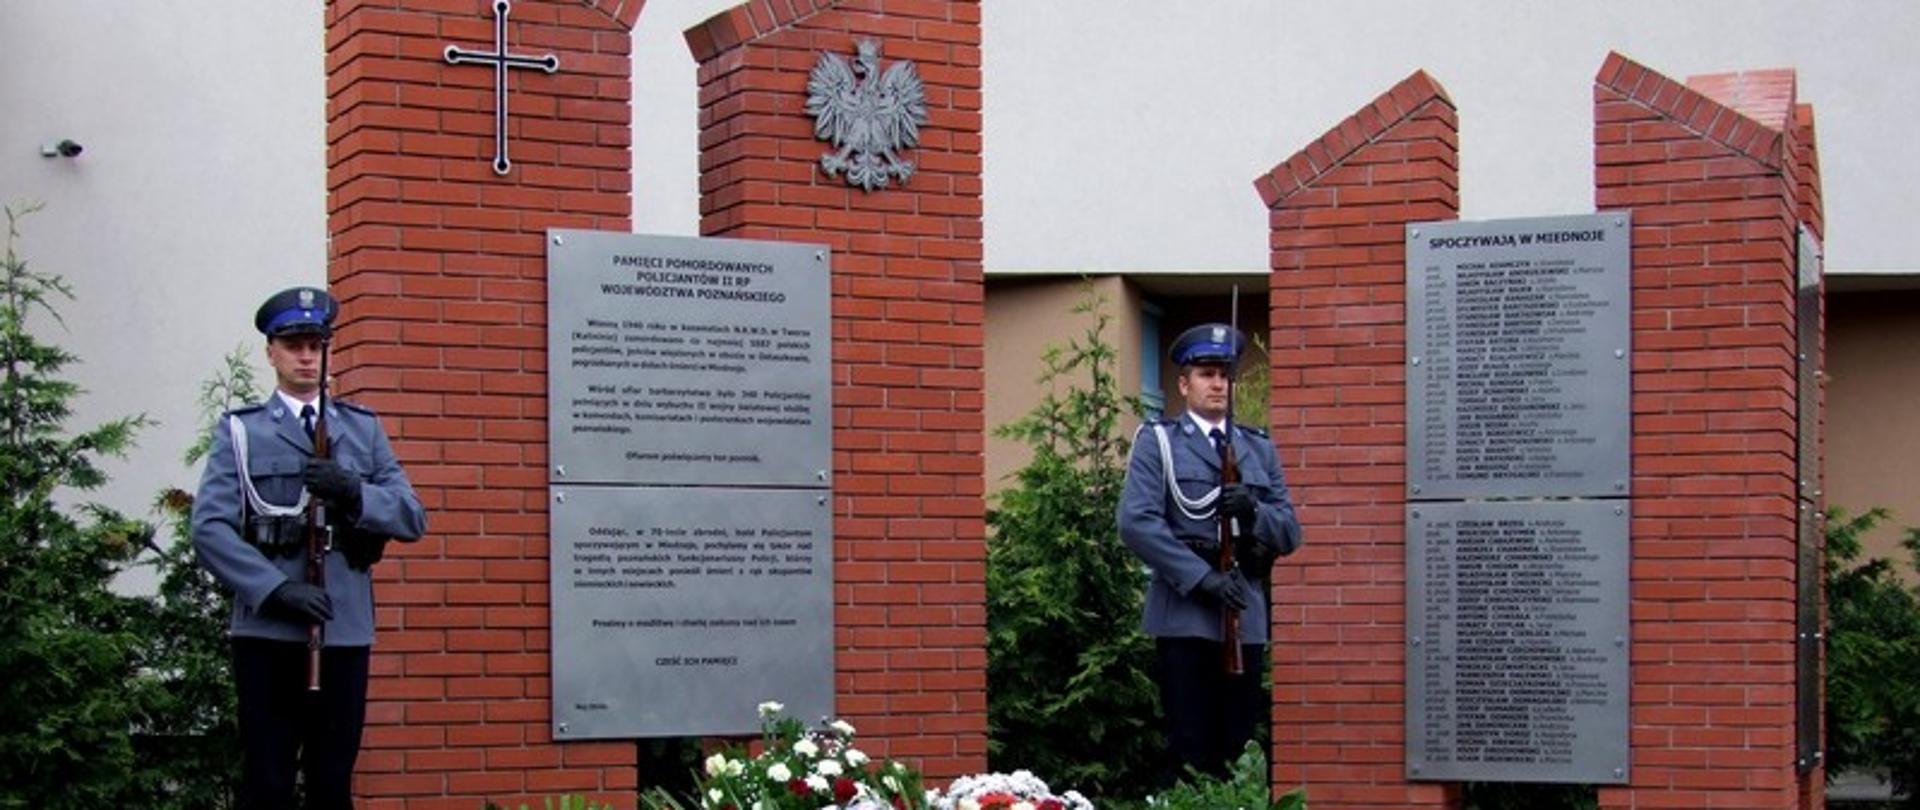 pomnik przy którym dtoi dwóch policjantów i leżą biało czerwone wiązanki 